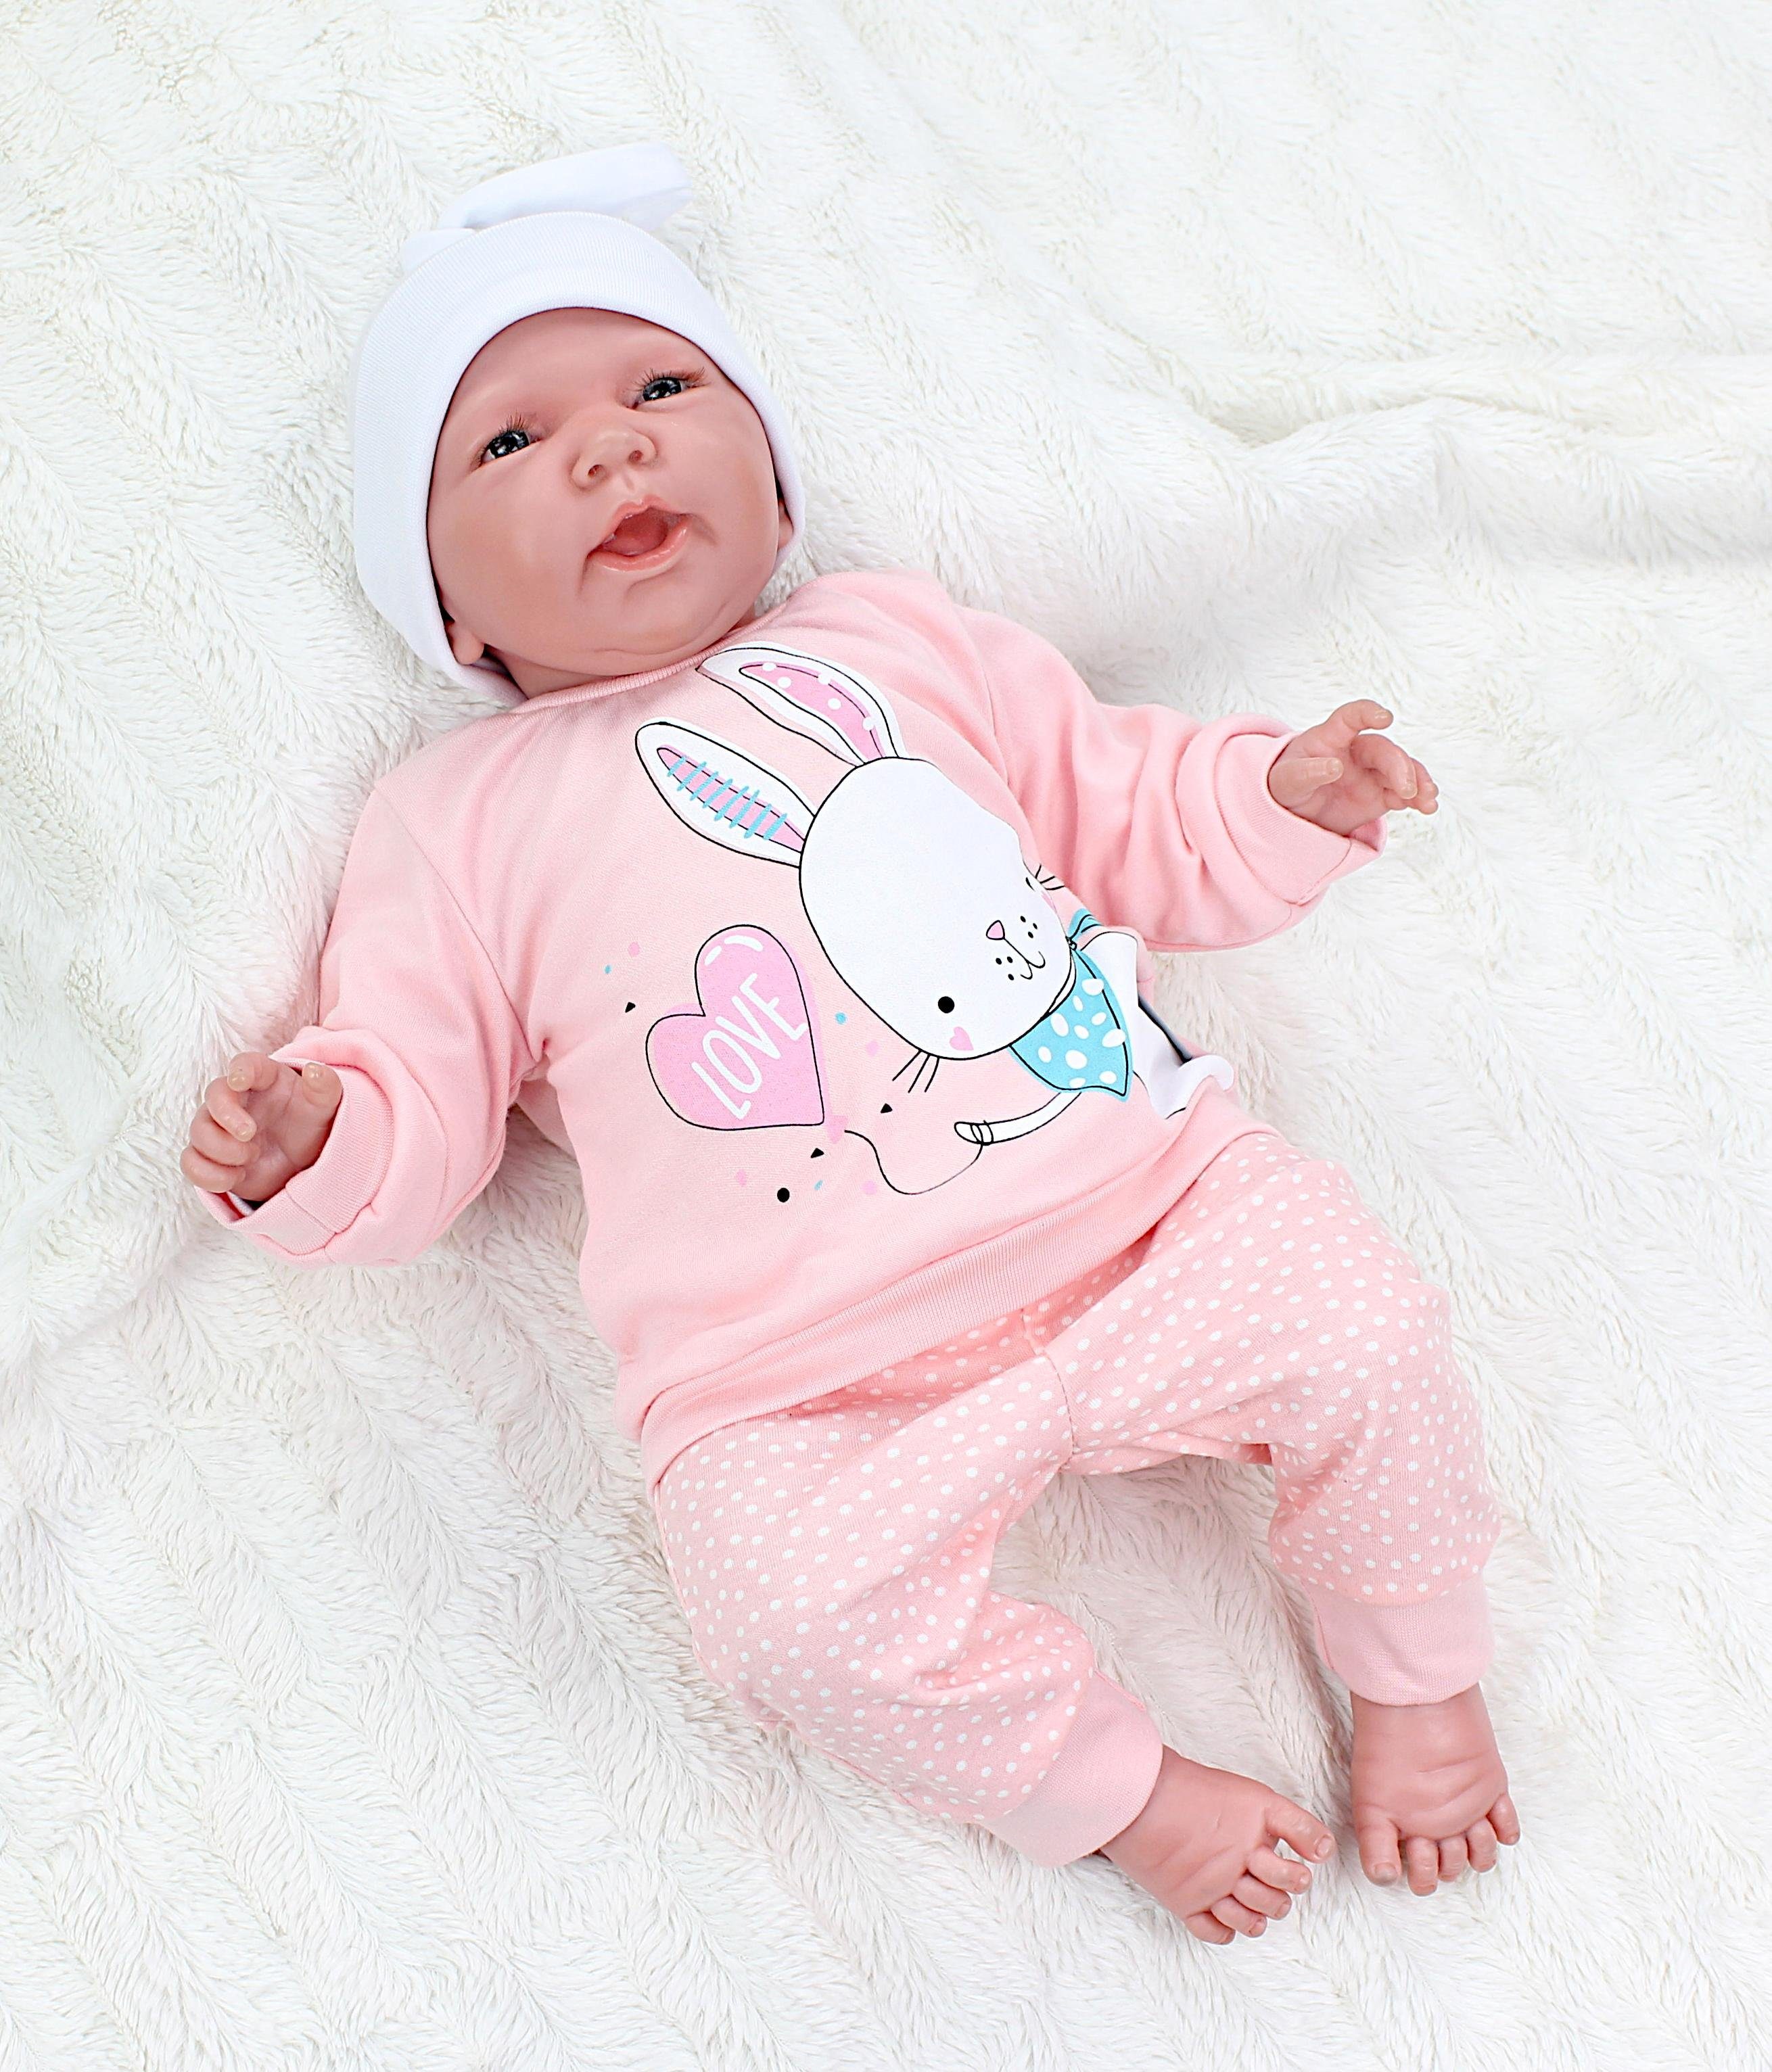 TupTam / Spruch 2teilig Mädchen Baby Punkte Love Erstausstattungspaket Babyhose Kaninchen Babykleidung Langarmshirt Aprikose mit